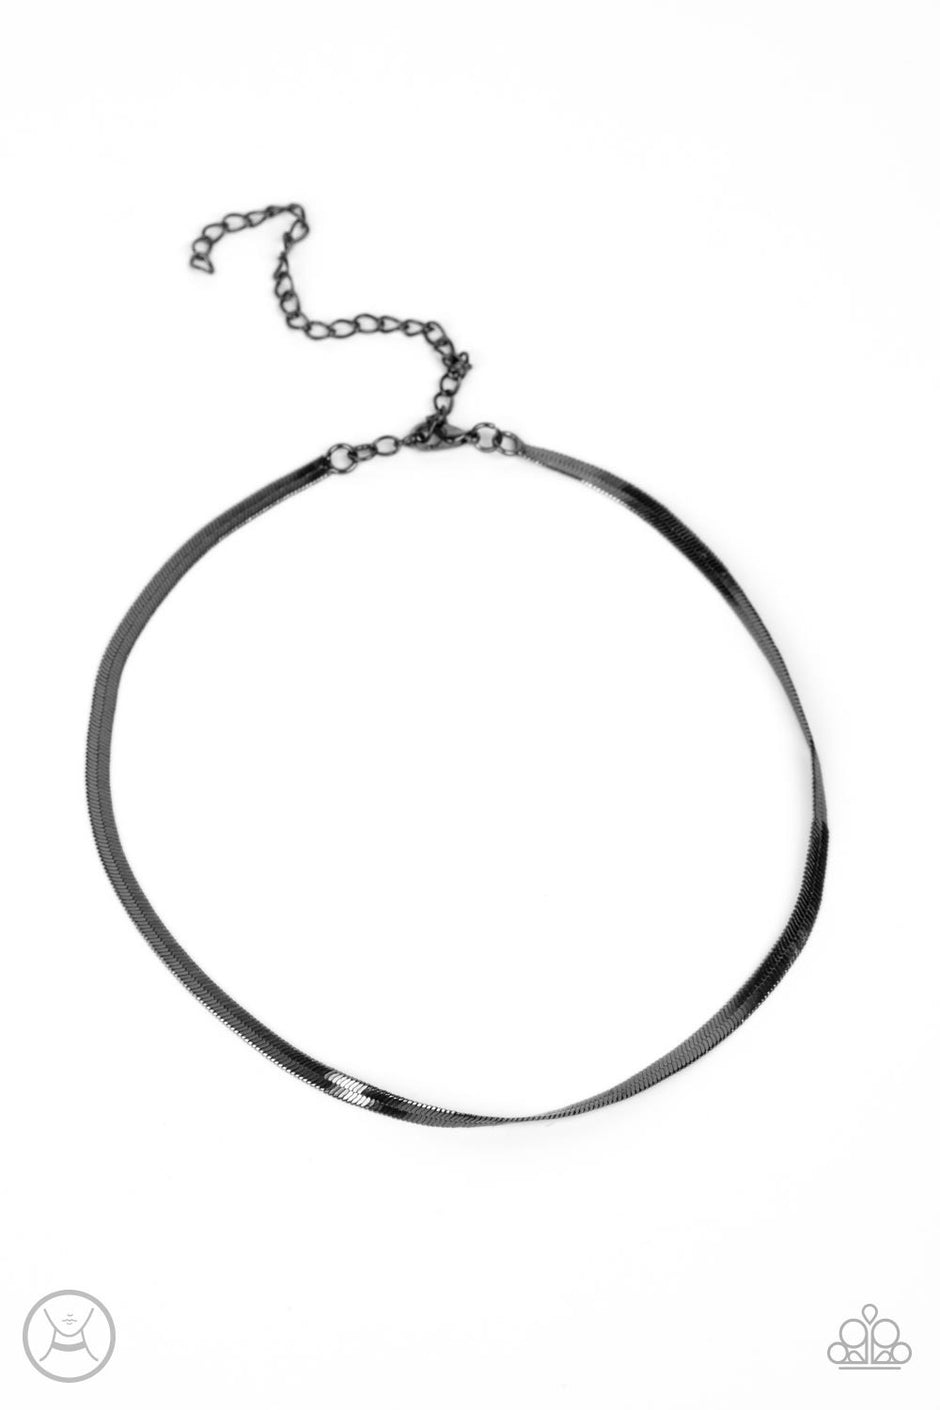 In No Time Flat - Gunmetal Snake Chain Choker Paparazzi Necklace & matching earrings